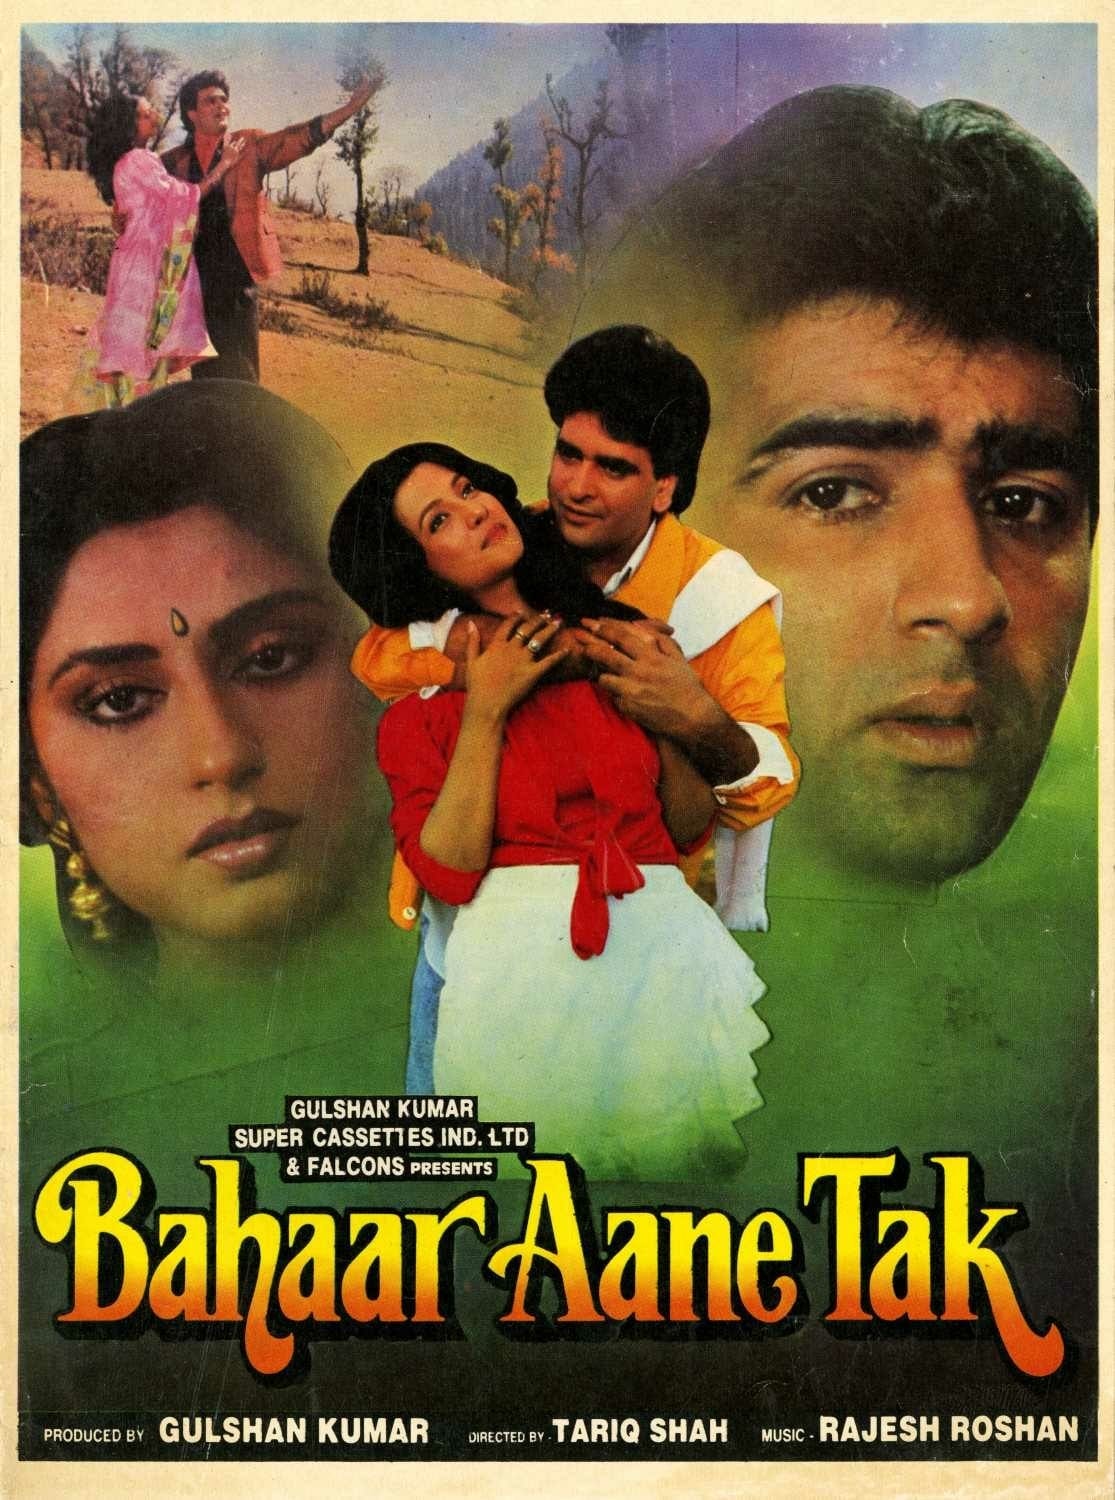 Poster for the movie "Bahaar Aane Tak"